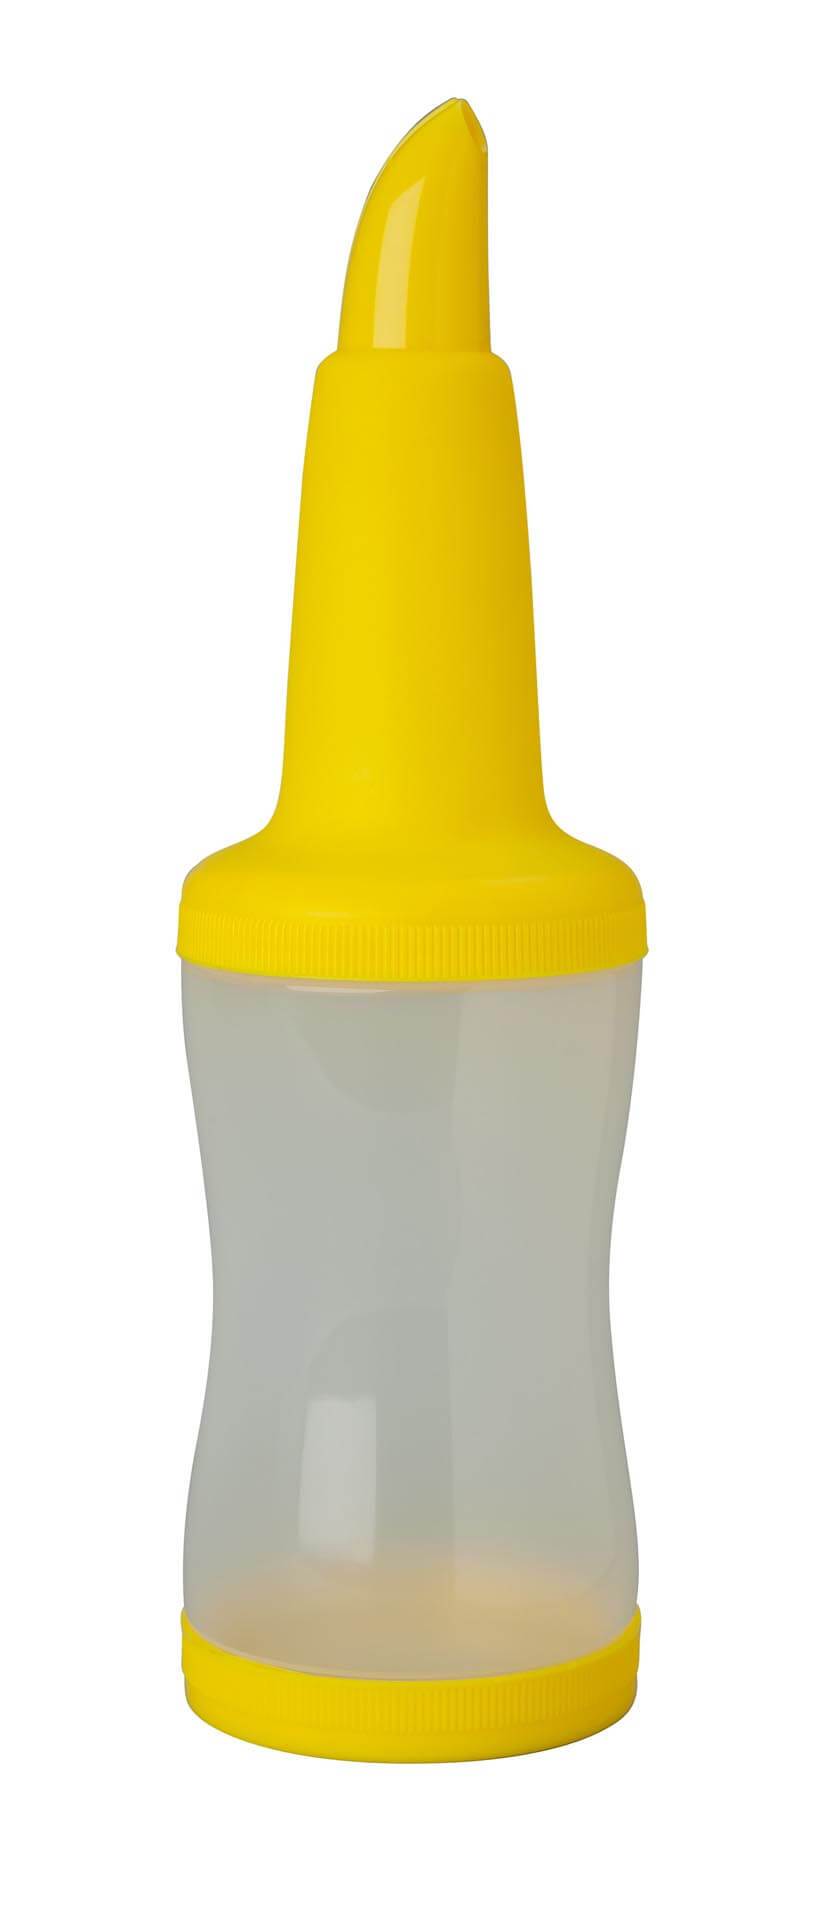 Freepour Bottle Yellow